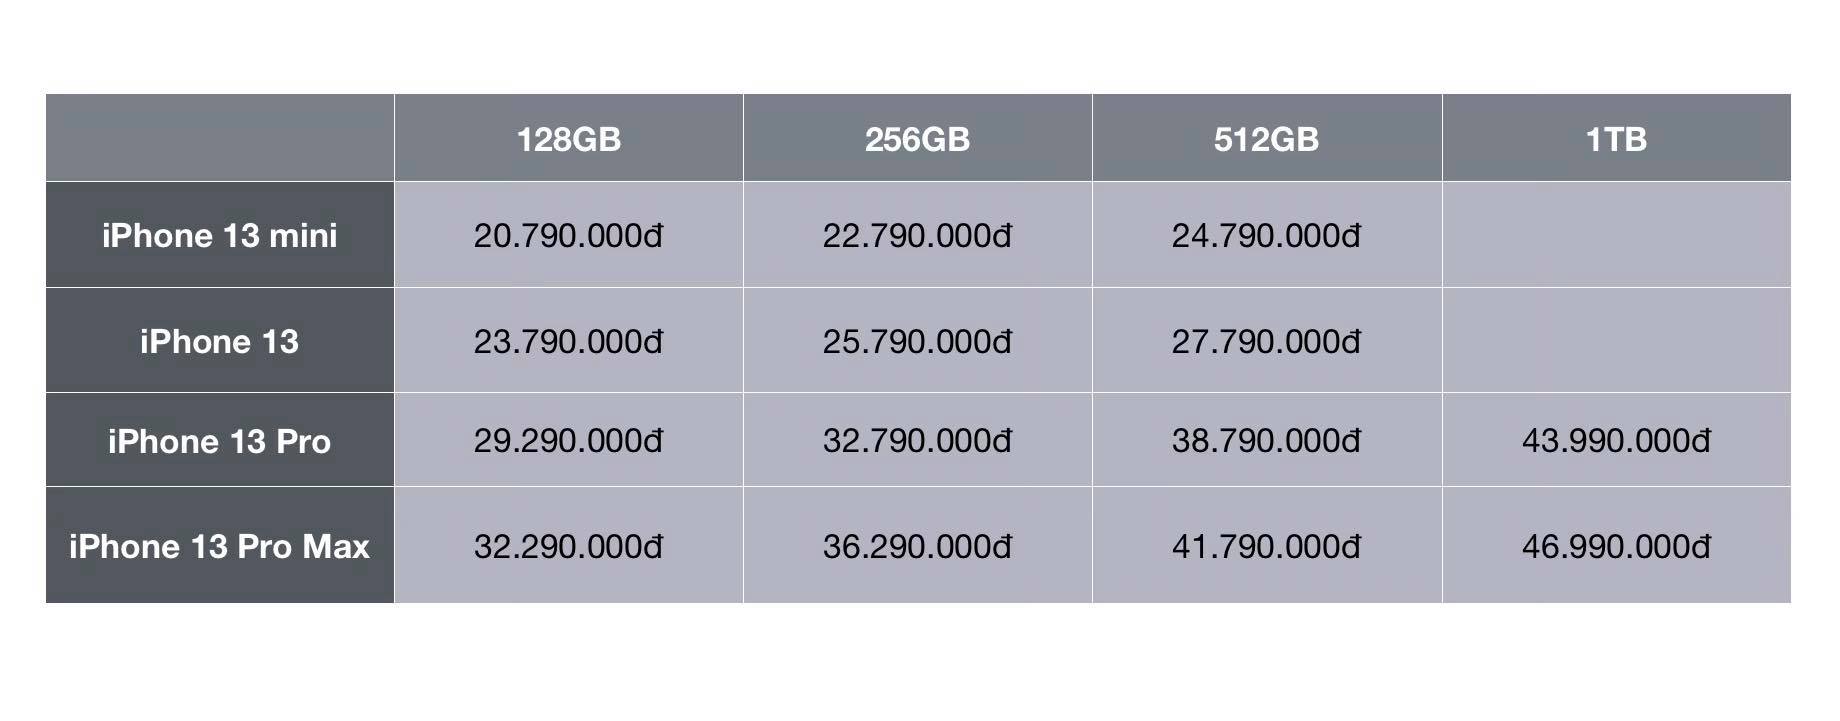 Nhiều đại lý công bố giá bán iPhone 13 chính hãng tại Việt Nam, cao nhất là 50 triệu đồng - Ảnh 5.